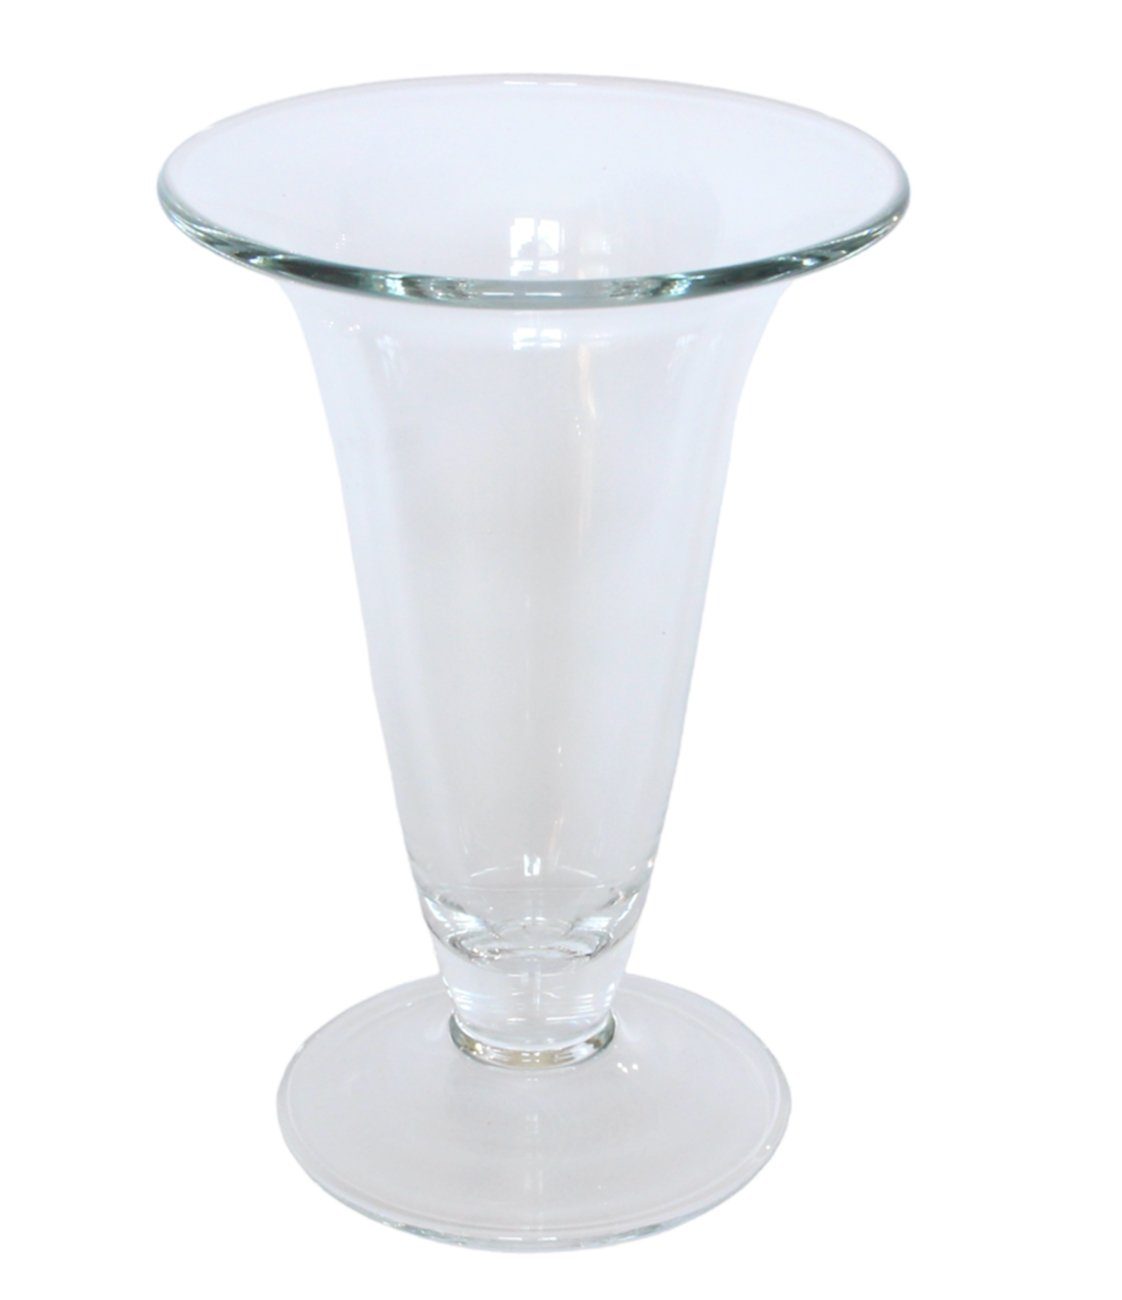 JS GartenDeko Dekovase Glasvase Vase H 24,5 cm Blumenvase oben breit zulaufend aus Glas